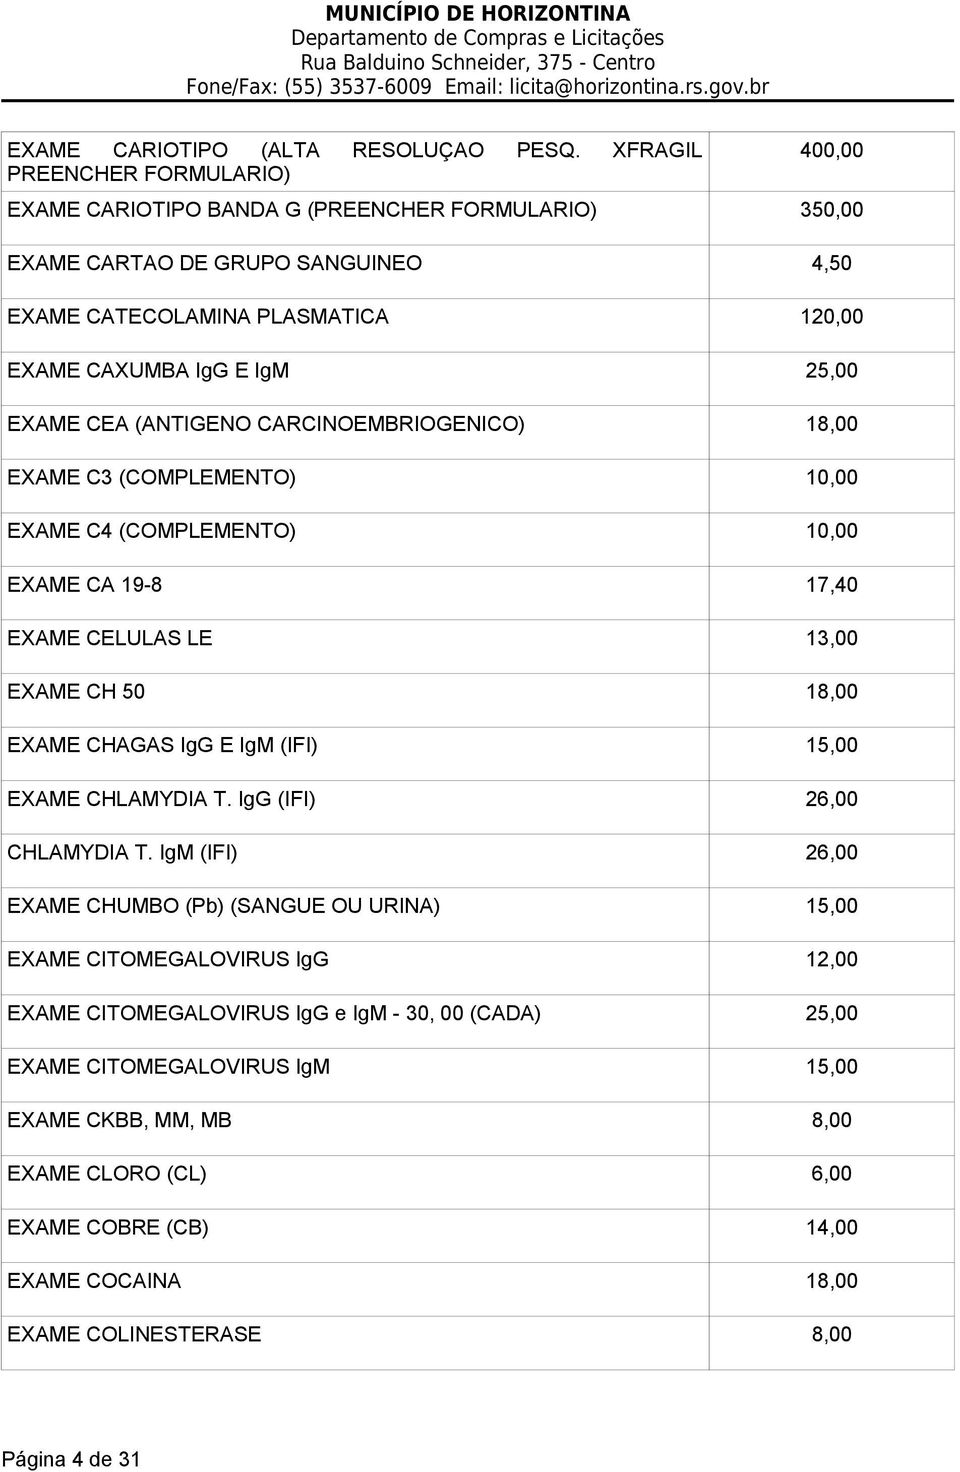 EXAME CEA (ANTIGENO CARCINOEMBRIOGENICO) 18,00 EXAME C3 (COMPLEMENTO) 10,00 EXAME C4 (COMPLEMENTO) 10,00 EXAME CA 19-8 17,40 EXAME CELULAS LE 13,00 EXAME CH 50 18,00 EXAME CHAGAS IgG E IgM (IFI)